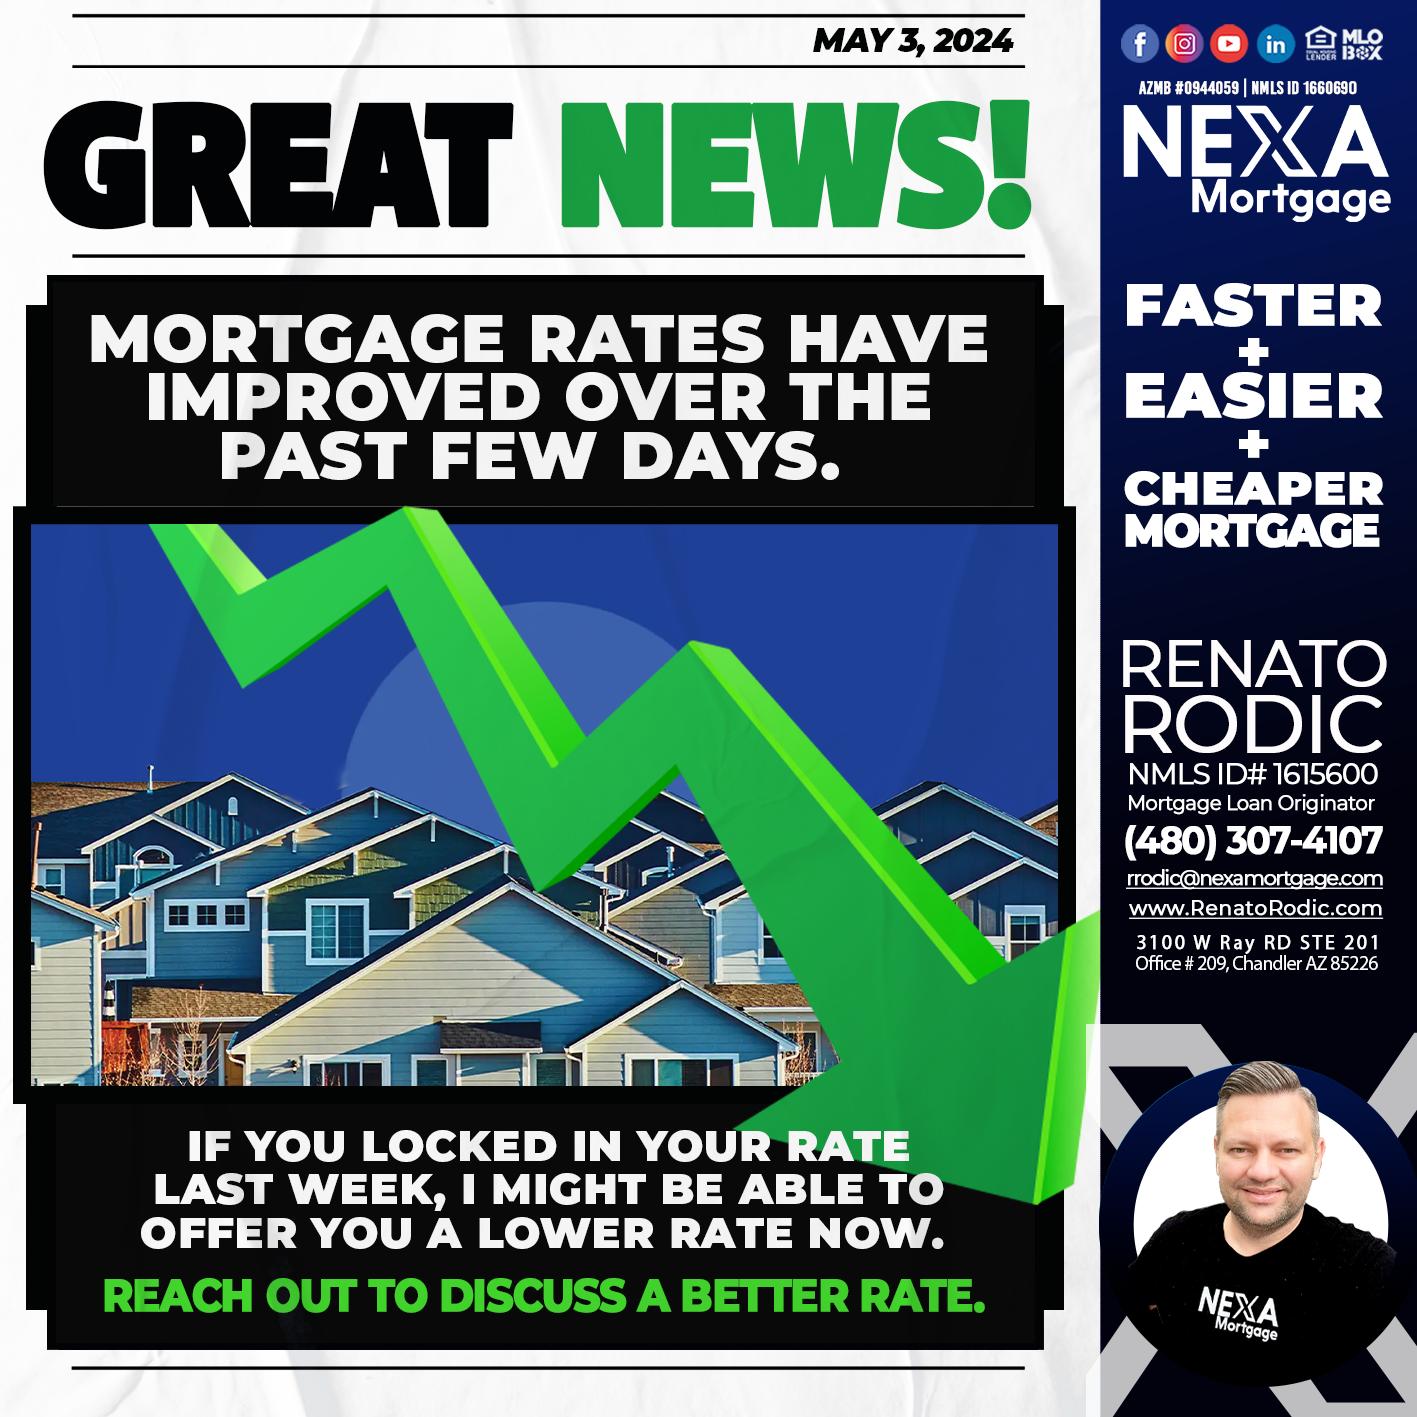 GREAT NEWS - Renato Rodic -Mortgage Loan Originator